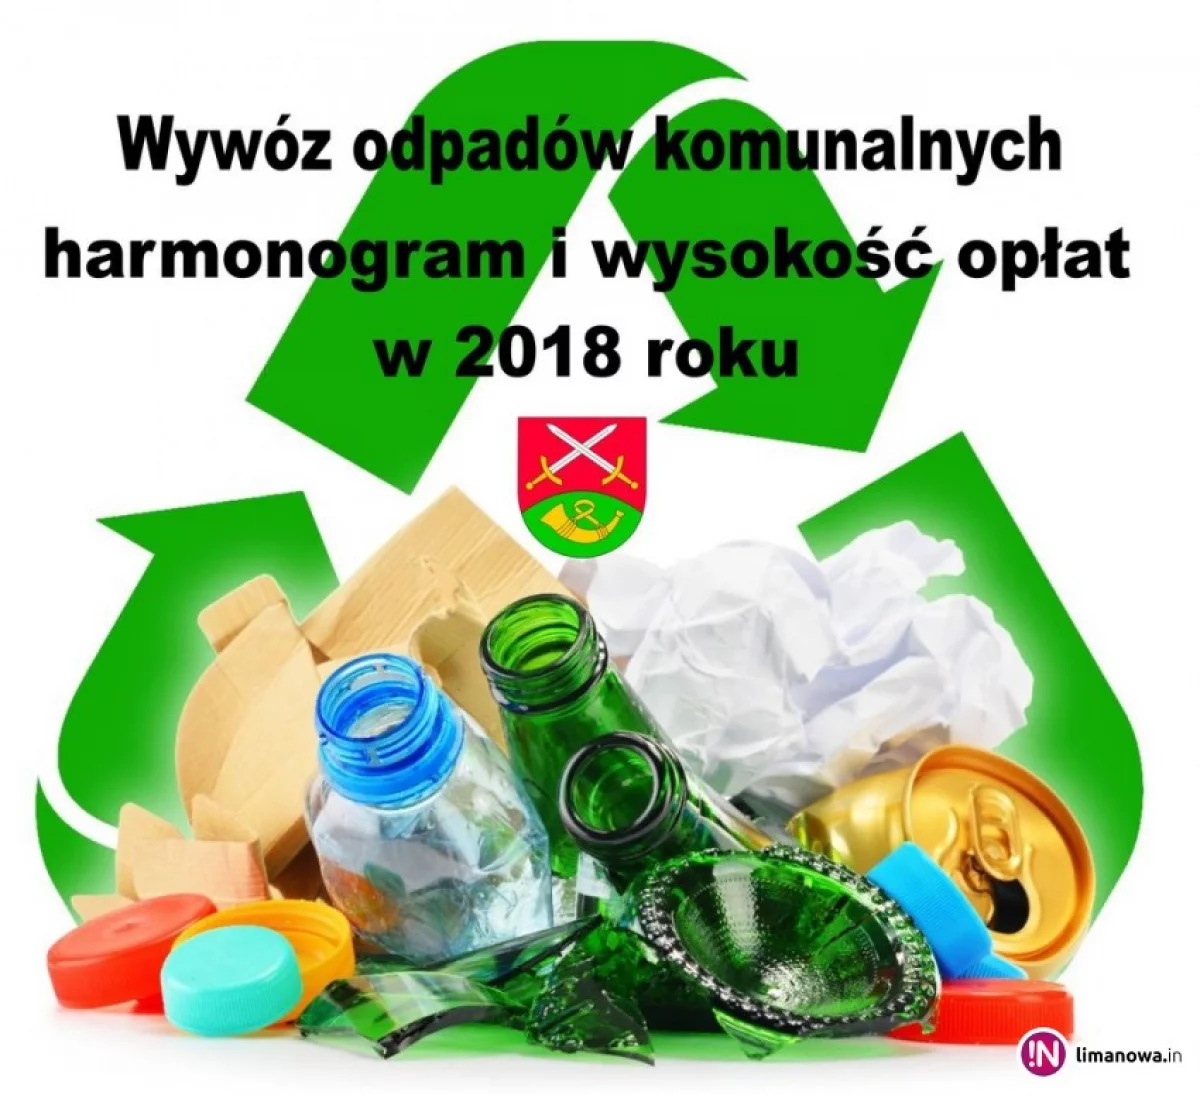 Wywóz odpadów komunalnych w 2018 r. - terminy i wysokość opłat